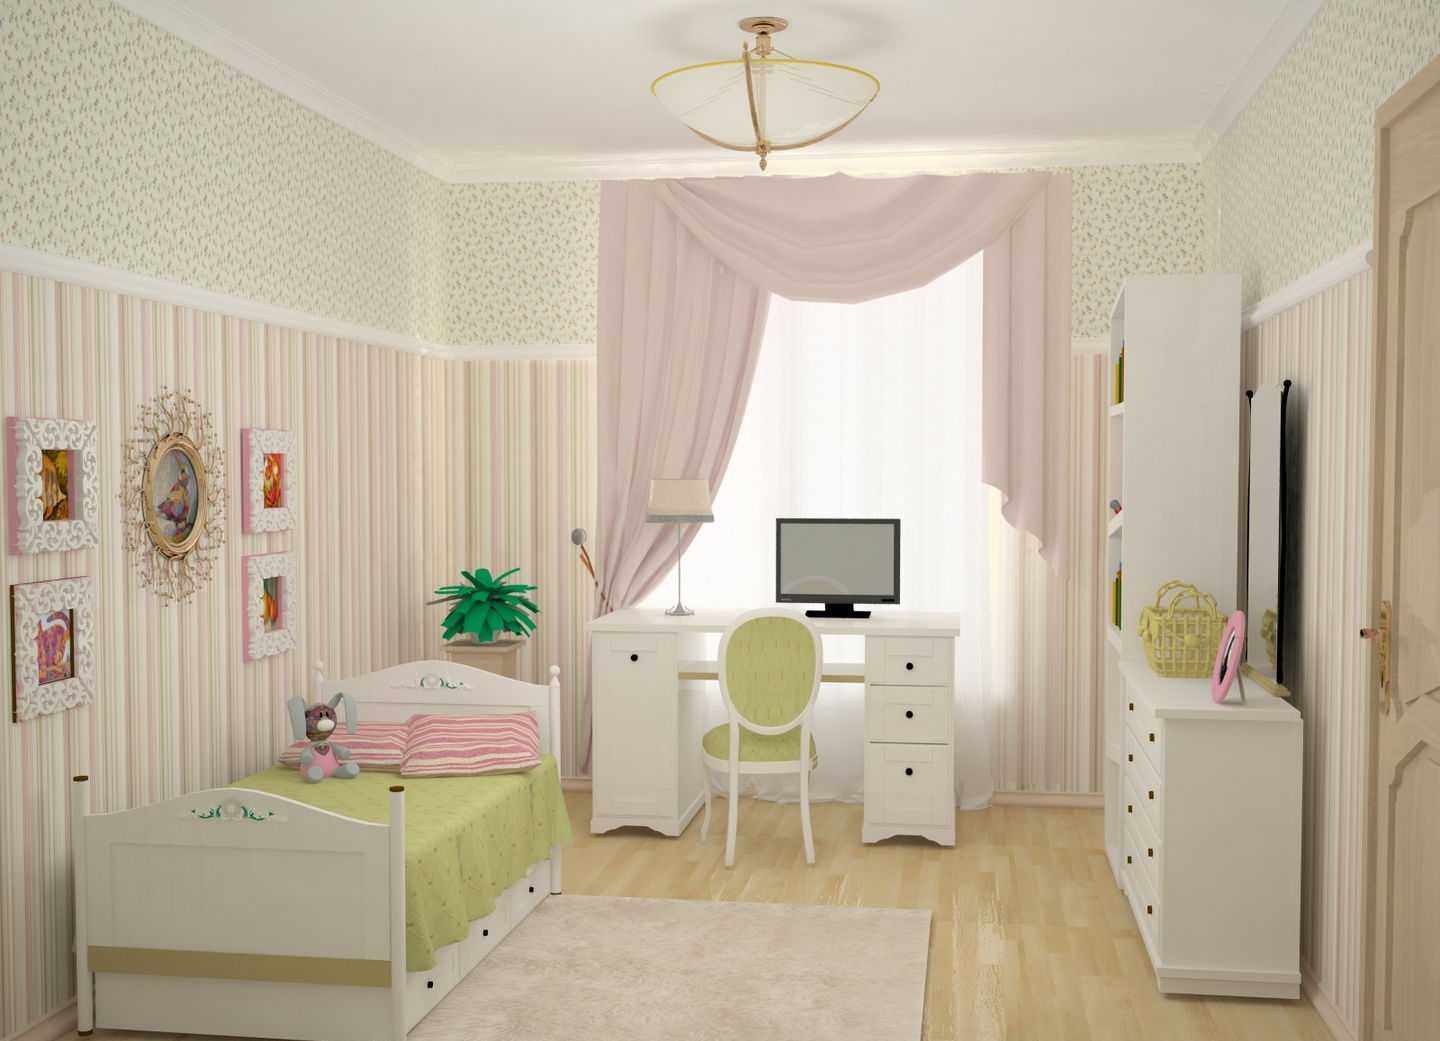 Дизайн комнаты для девочки 17 лет